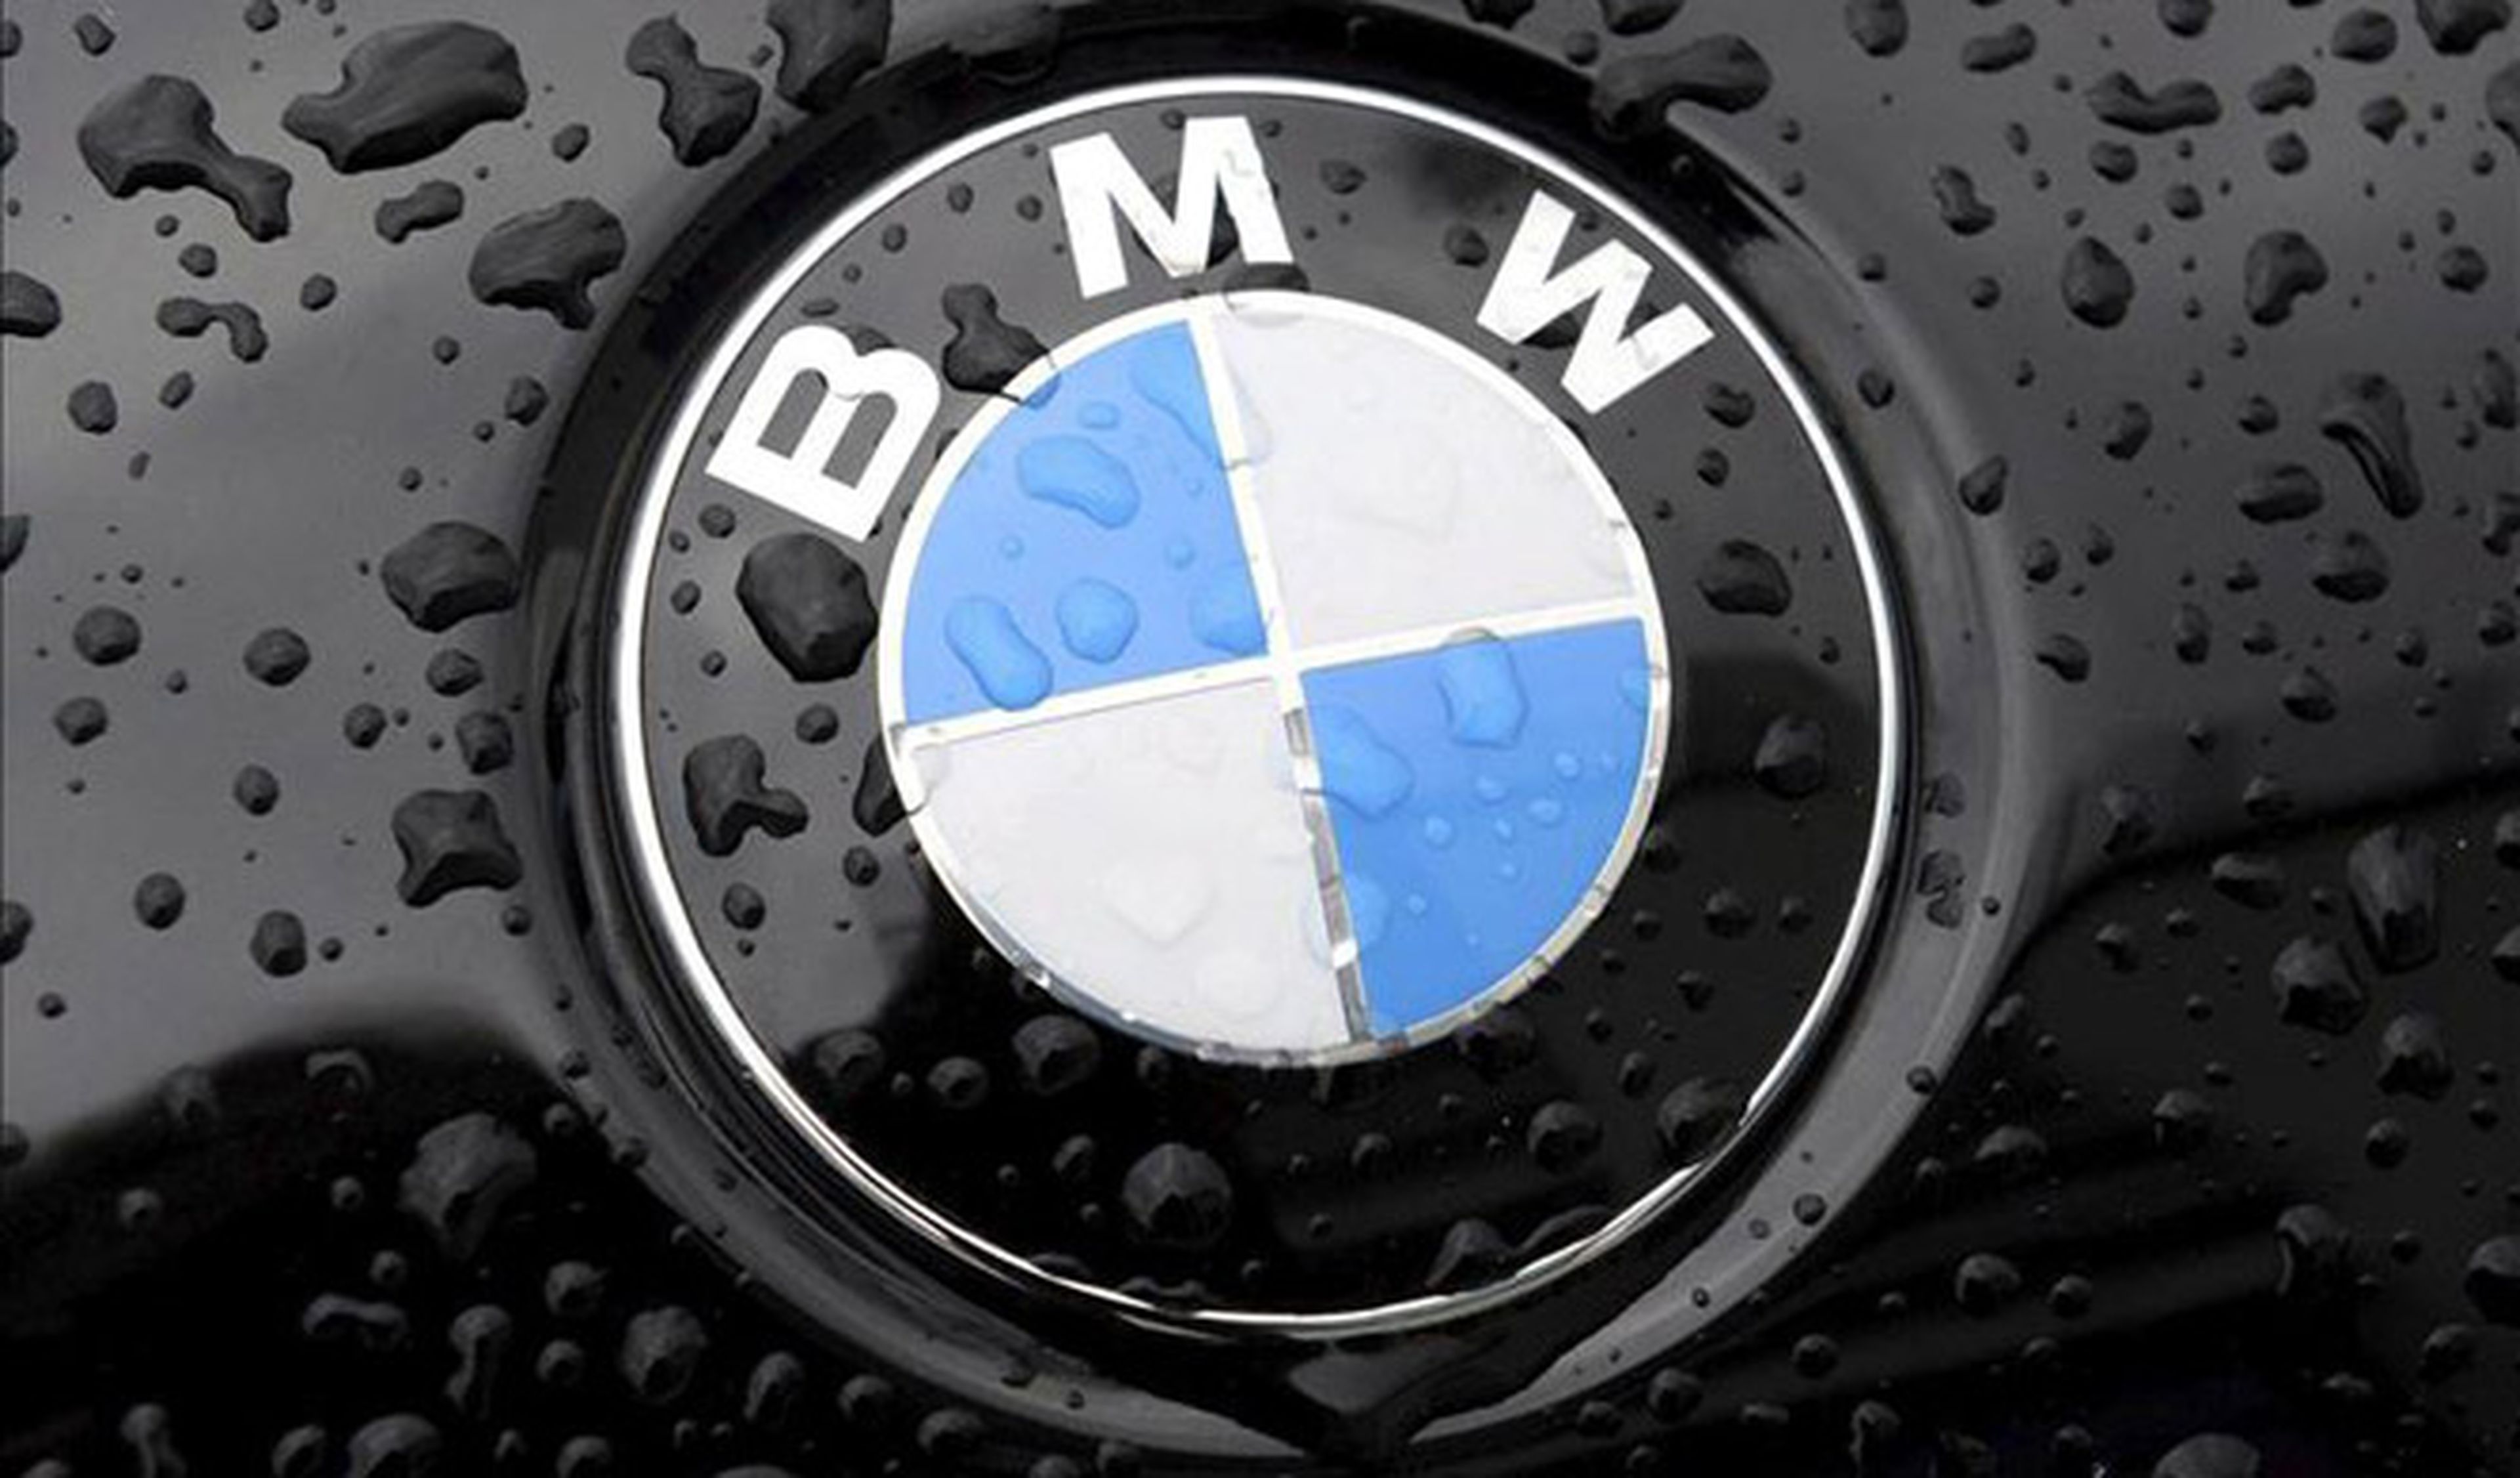 El logotipo de BMW esconde un secreto...